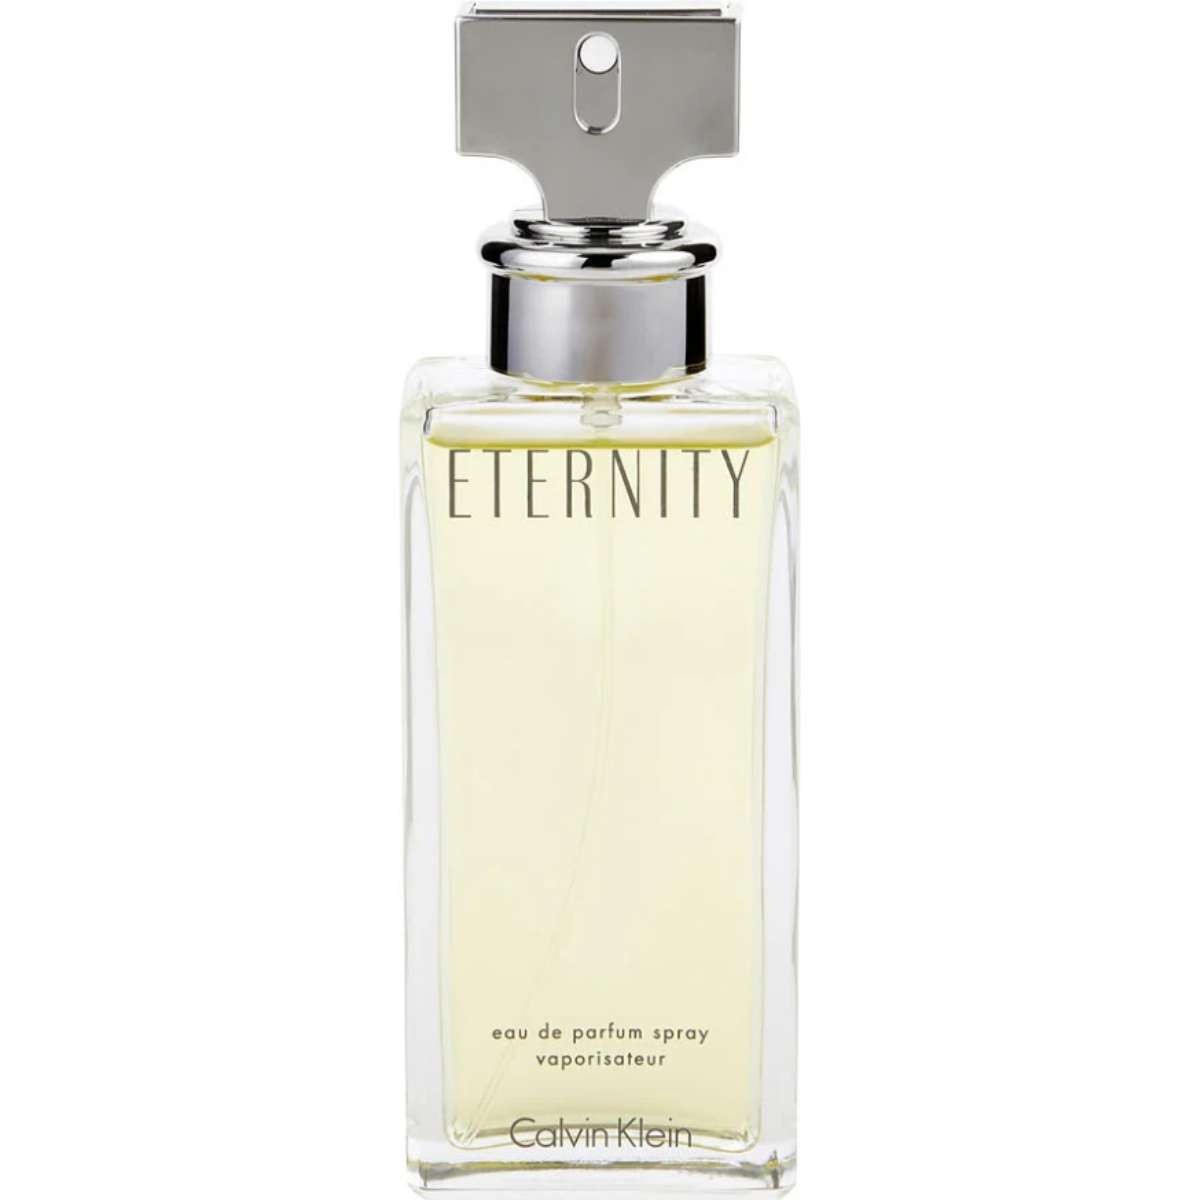 Eternity by Calvin Women Tester Spray 3.4 Klein Perfume oz EDP